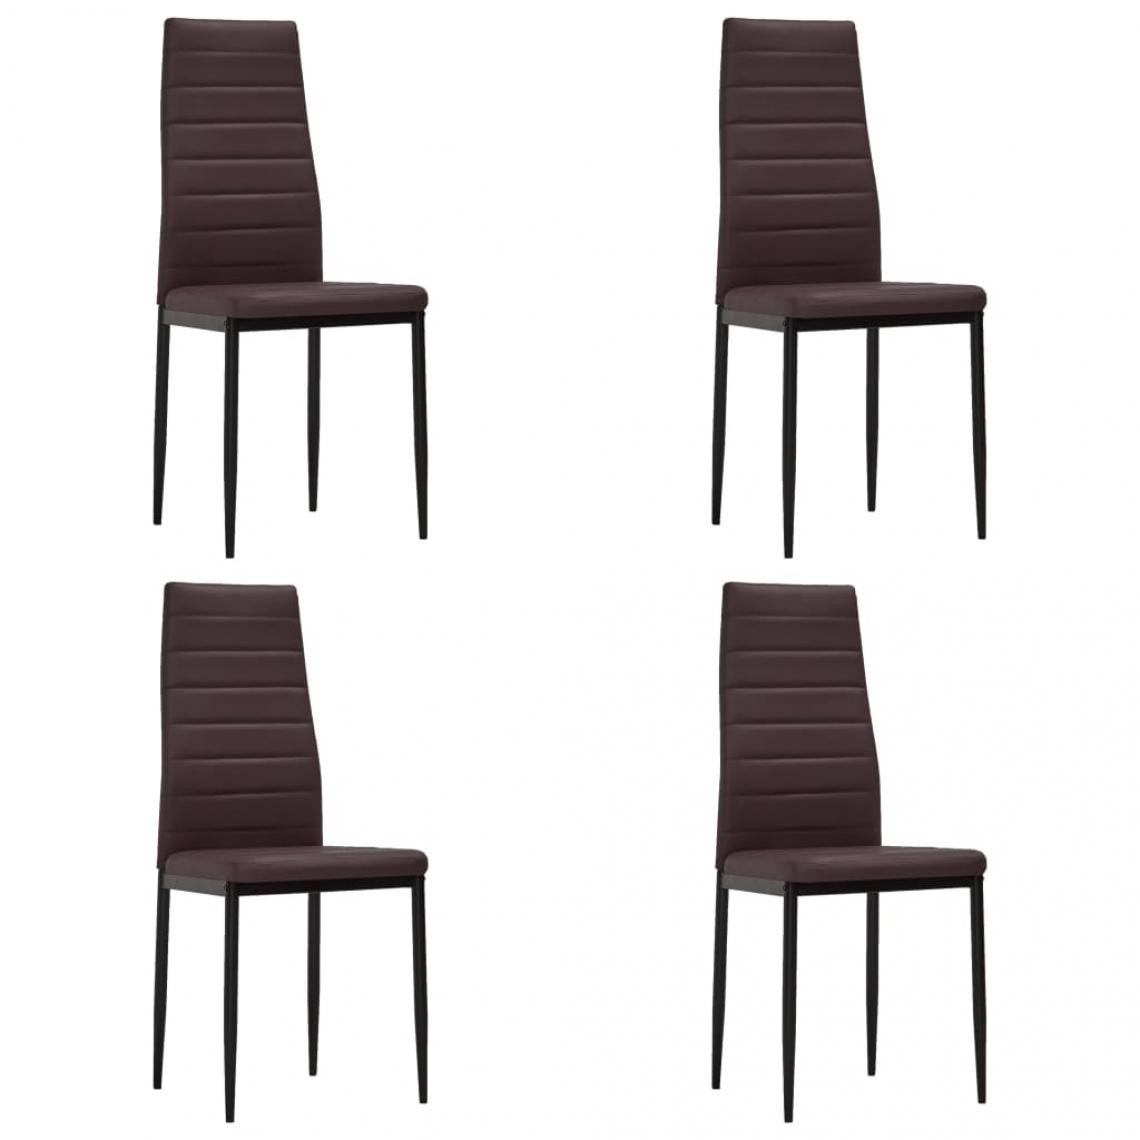 Decoshop26 - Lot de 4 chaises de salle à manger cuisine design moderne similicuir marron CDS021703 - Chaises